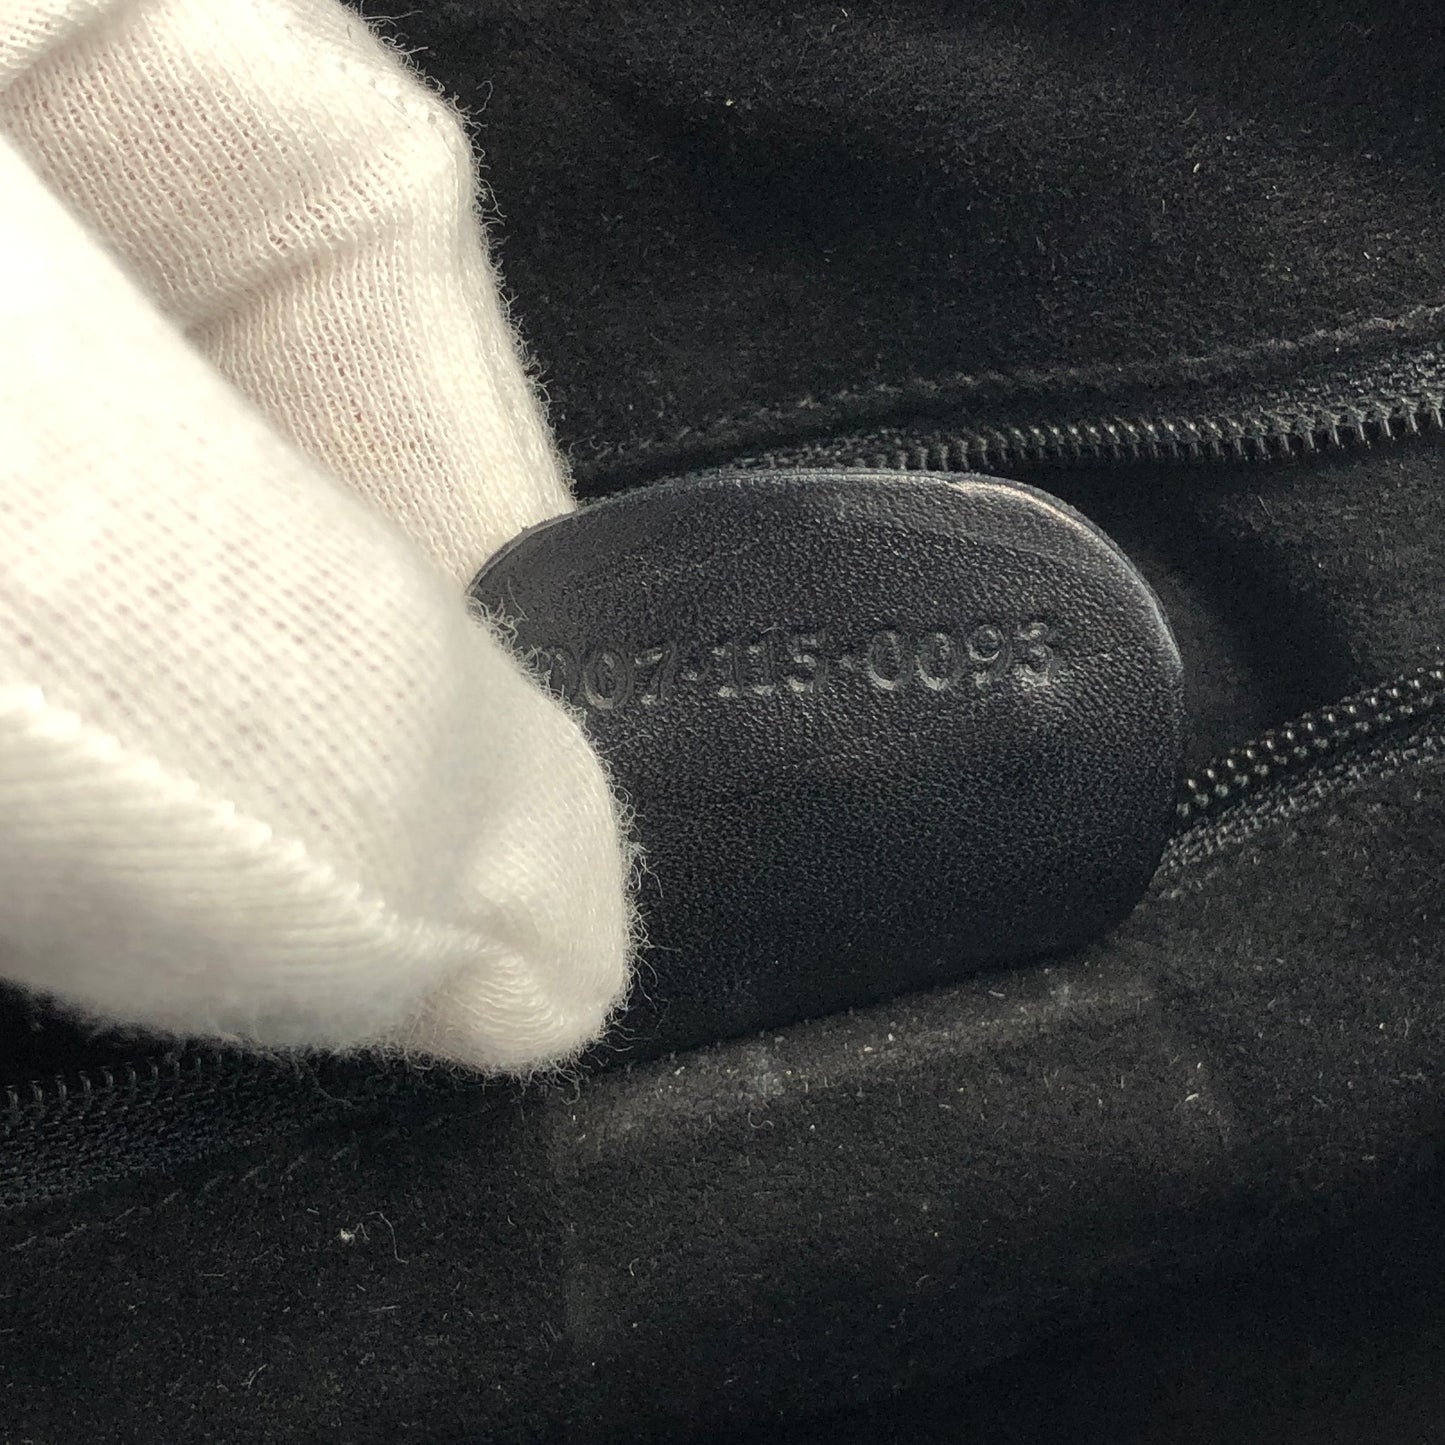 GUCCI Logo Leather Crossbody Shoulder bag Black Vintage xmntn8